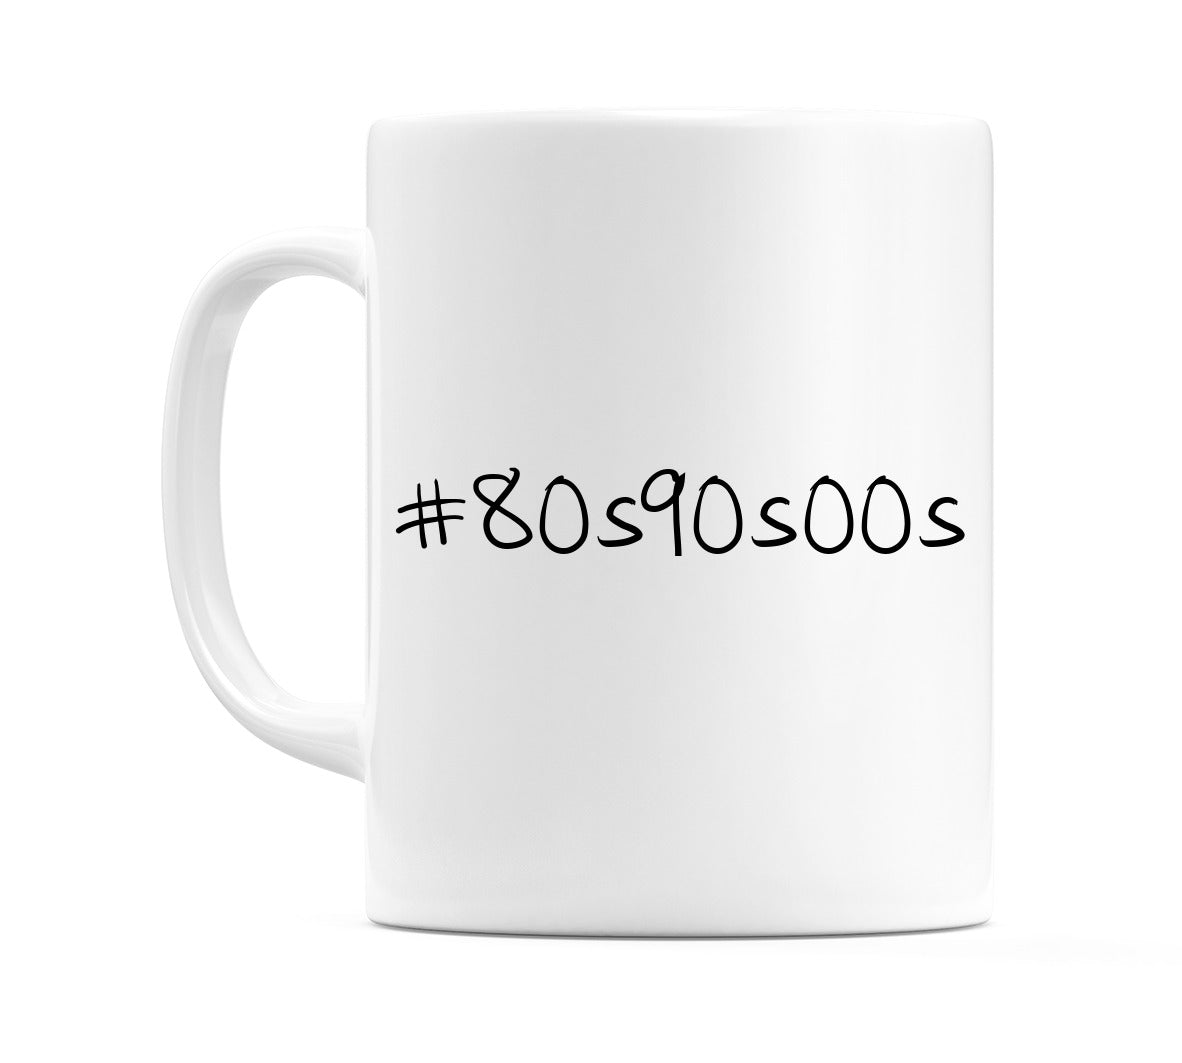 #80s90s00s Mug